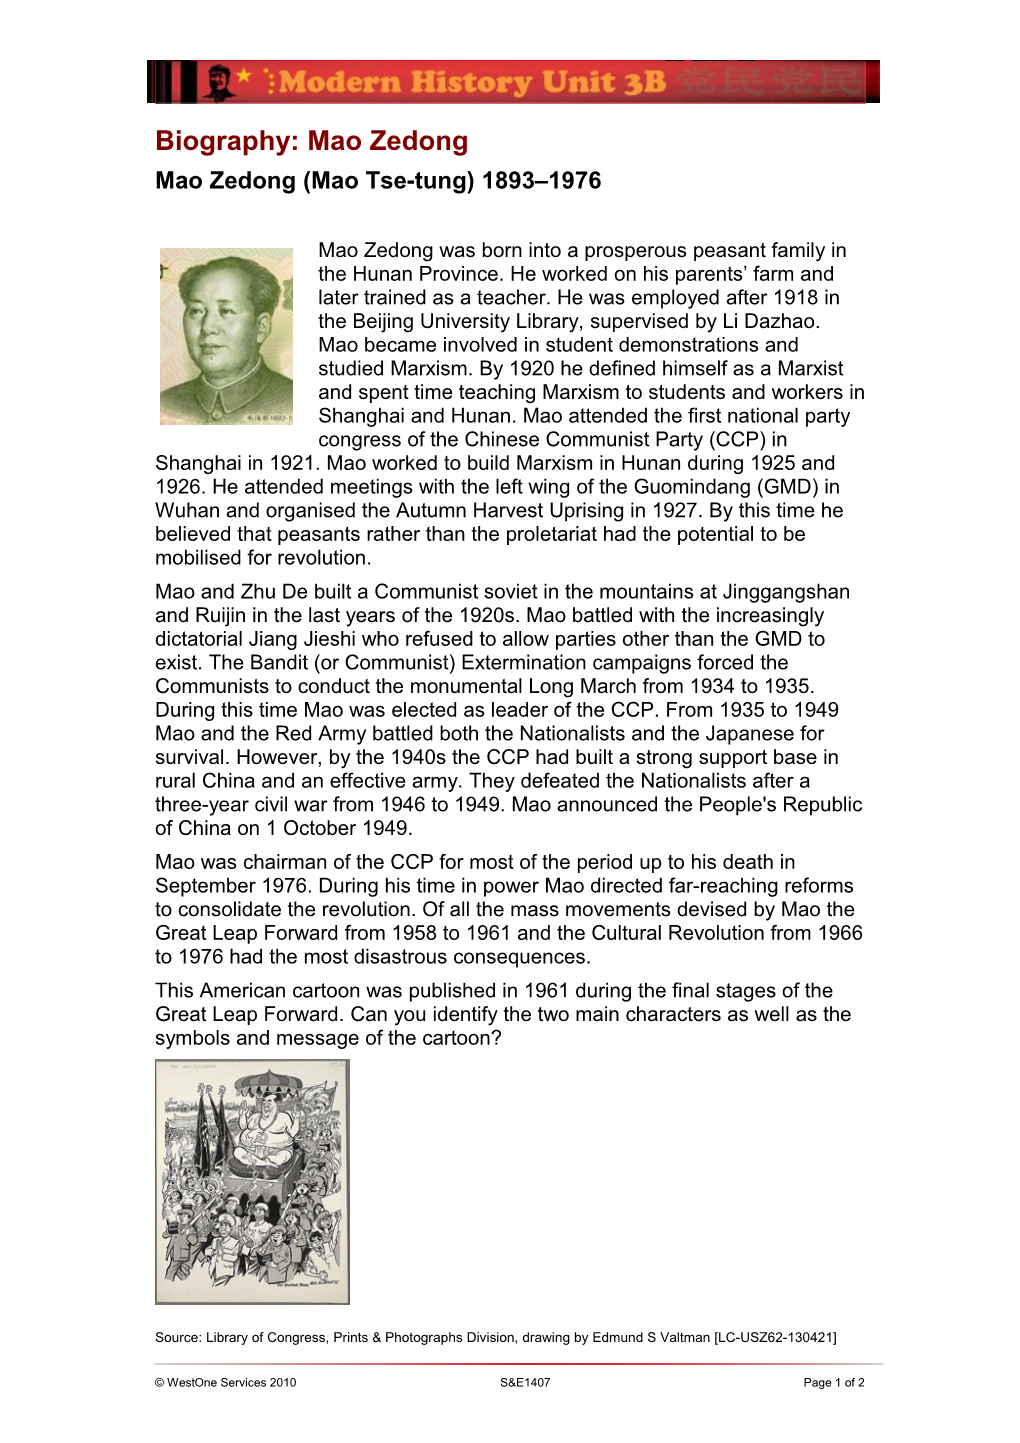 Biography: Jiang Jieshi